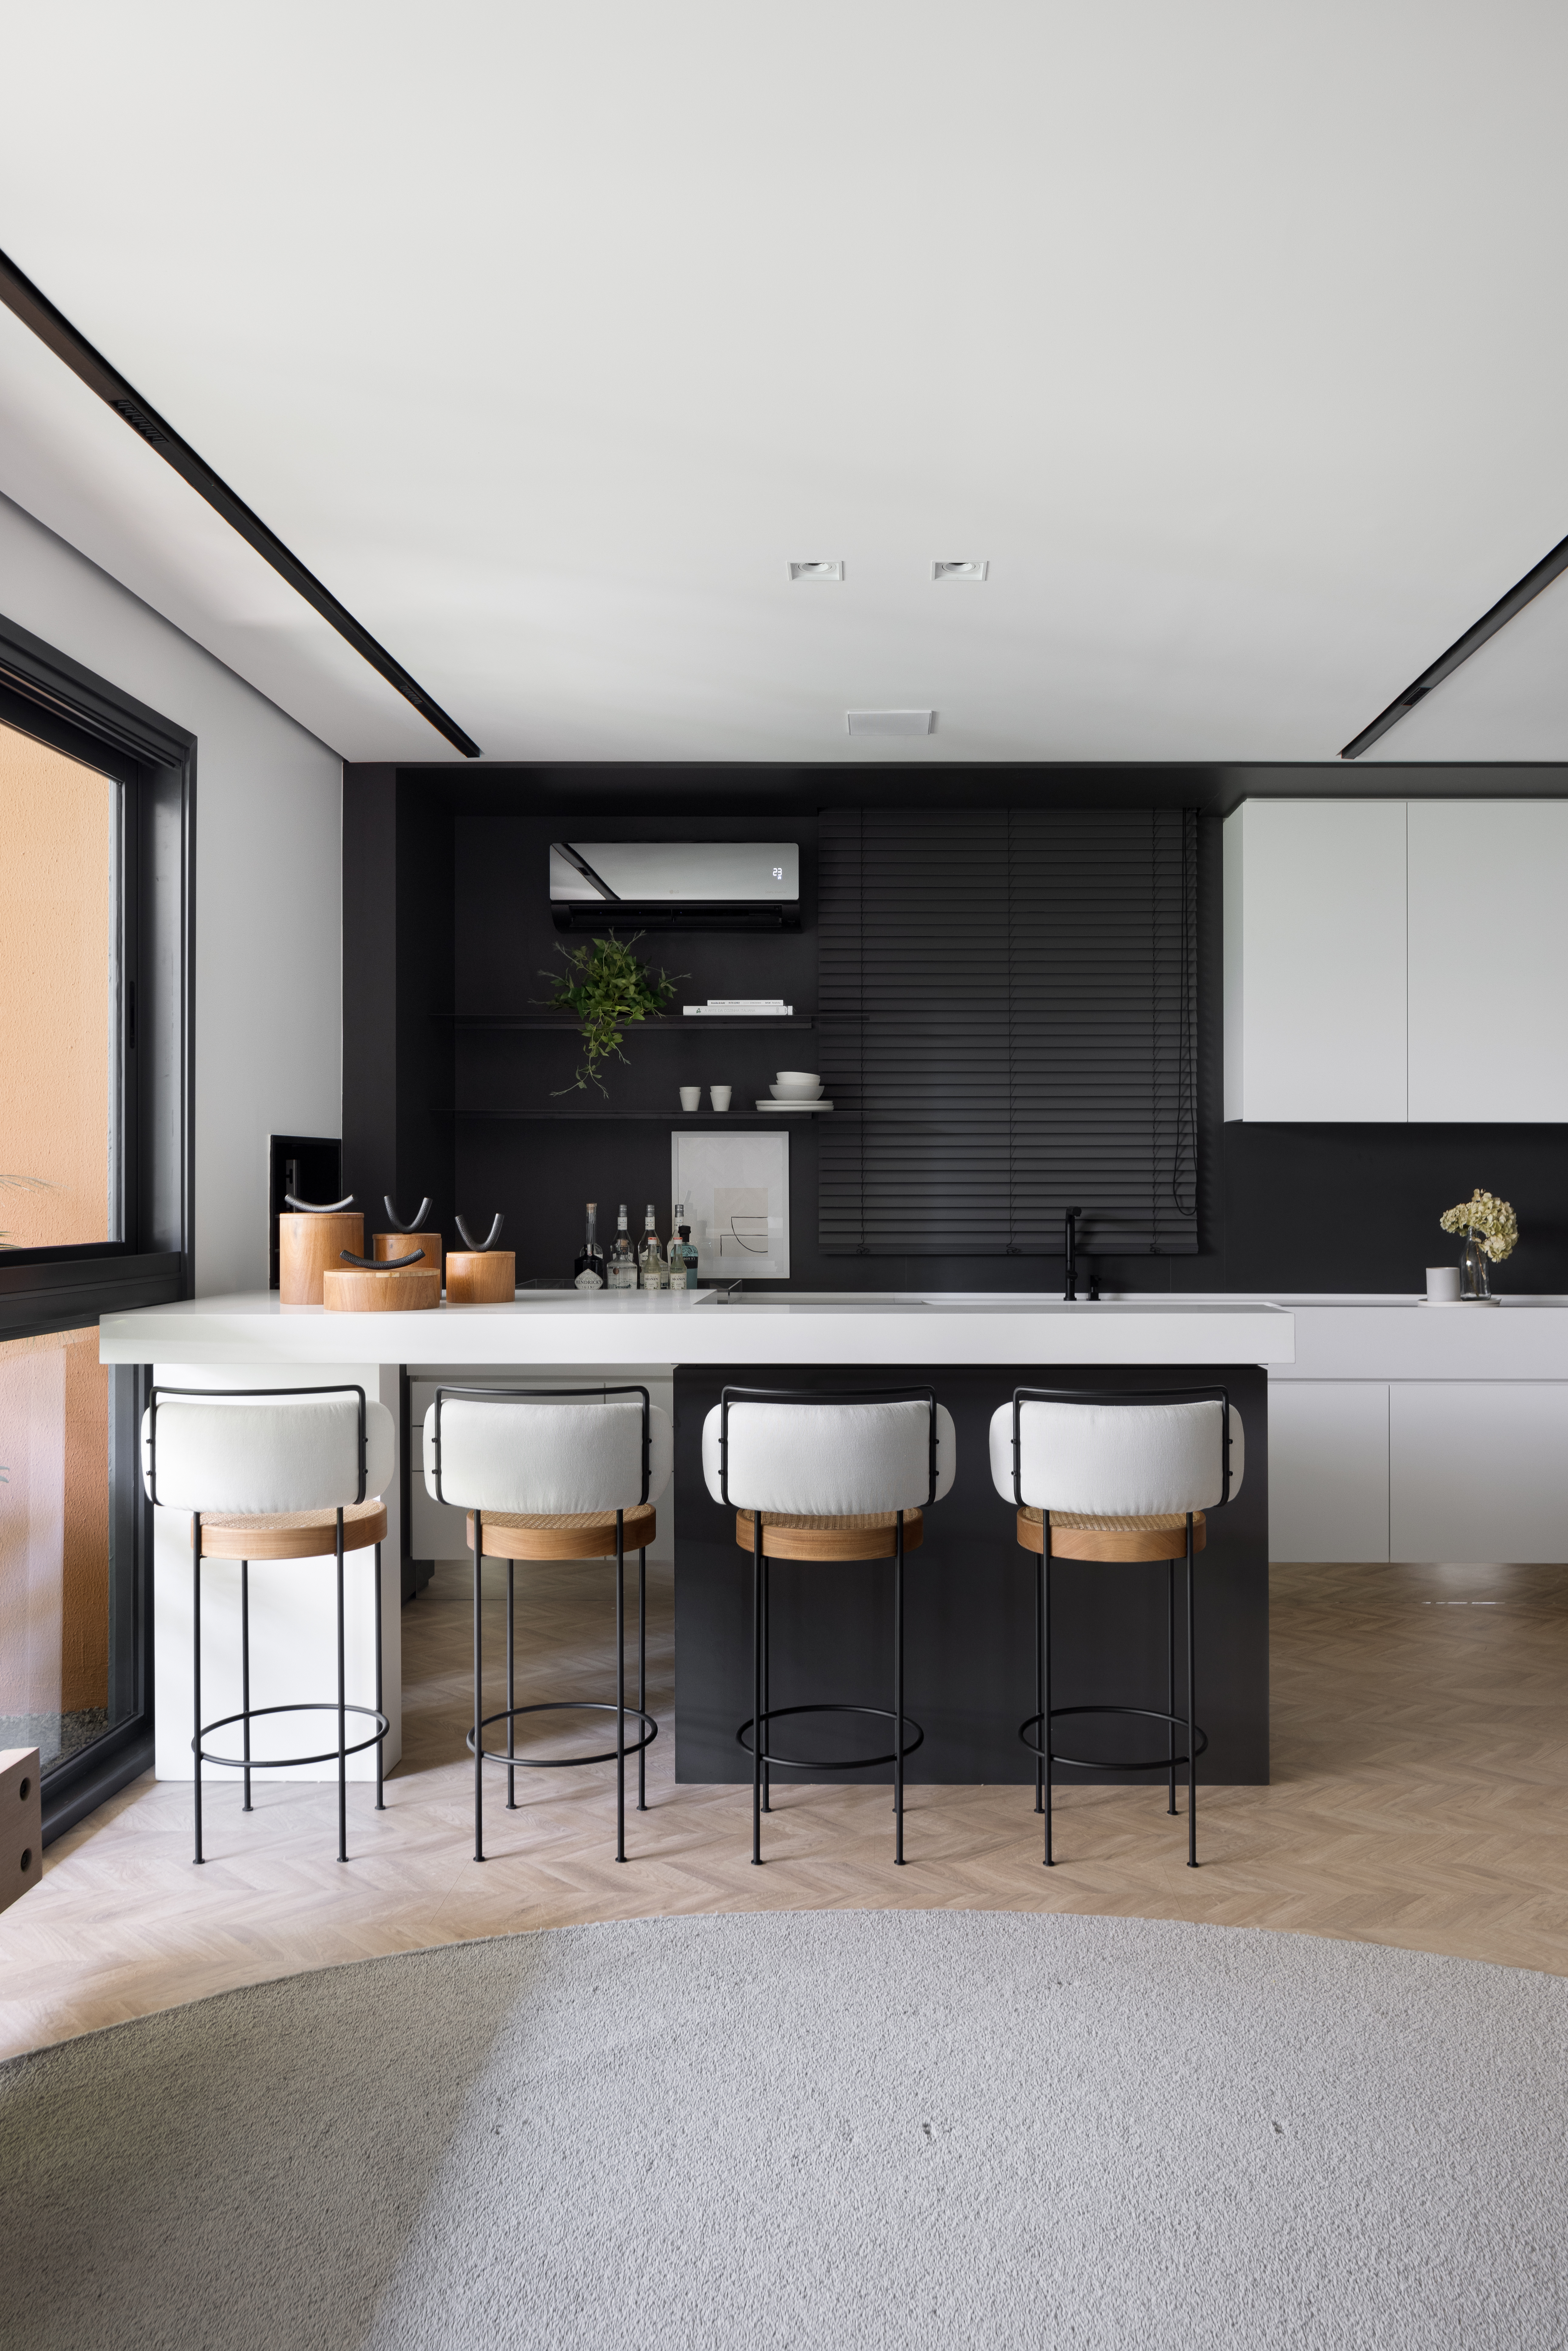 Apê de 142 m² tem paleta elegante de preto e branco e layout integrado. Projeto de Boher Arquitetos. Na foto, cozinha com parede preta, marcenaria branca, banquetas, piso de madeira.